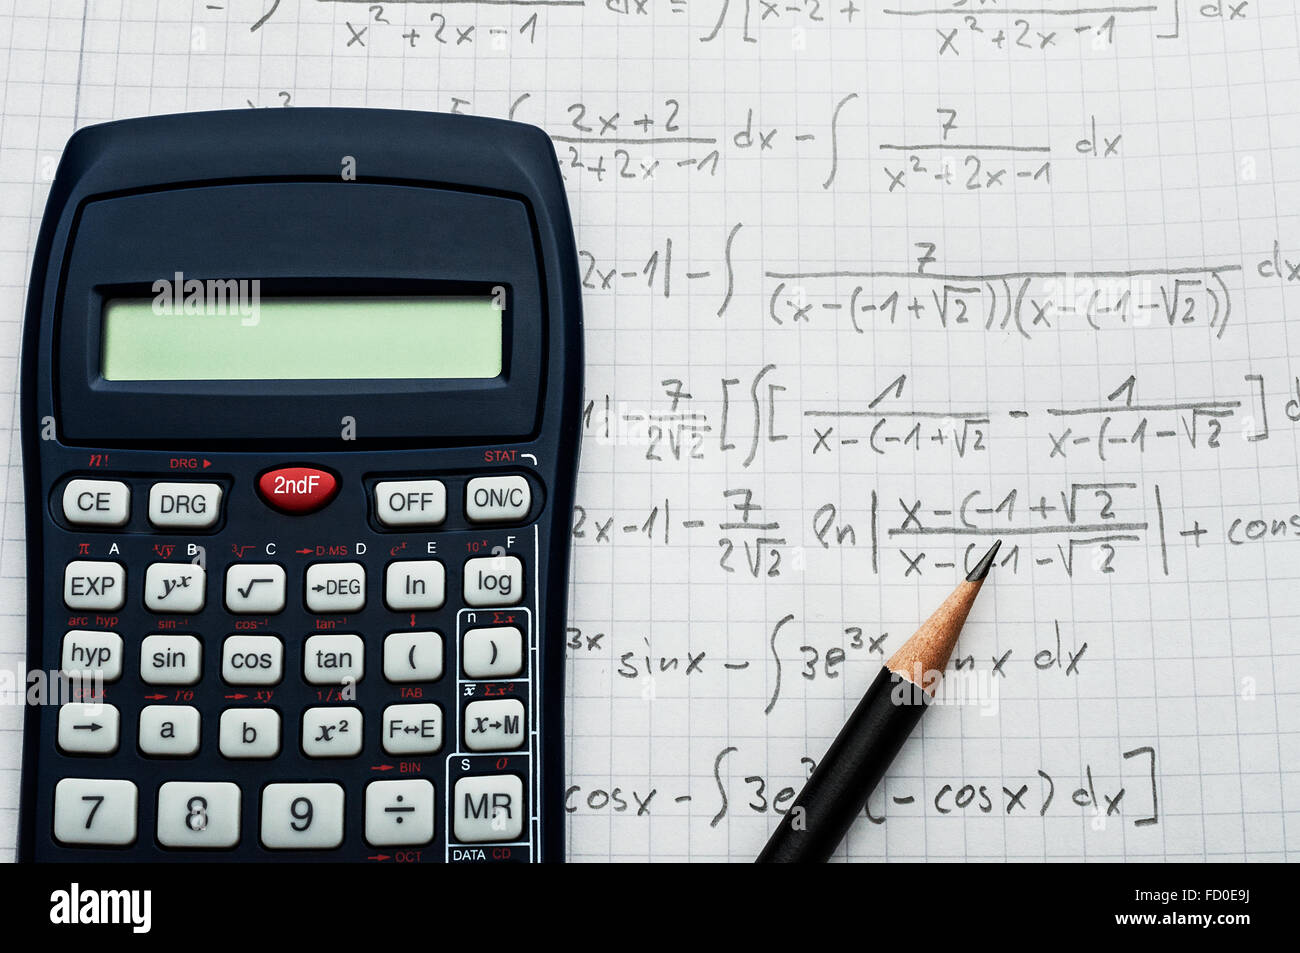 Concept mathématique - calculatrice et crayon sur une feuille de papier avec des formules mathématiques Banque D'Images